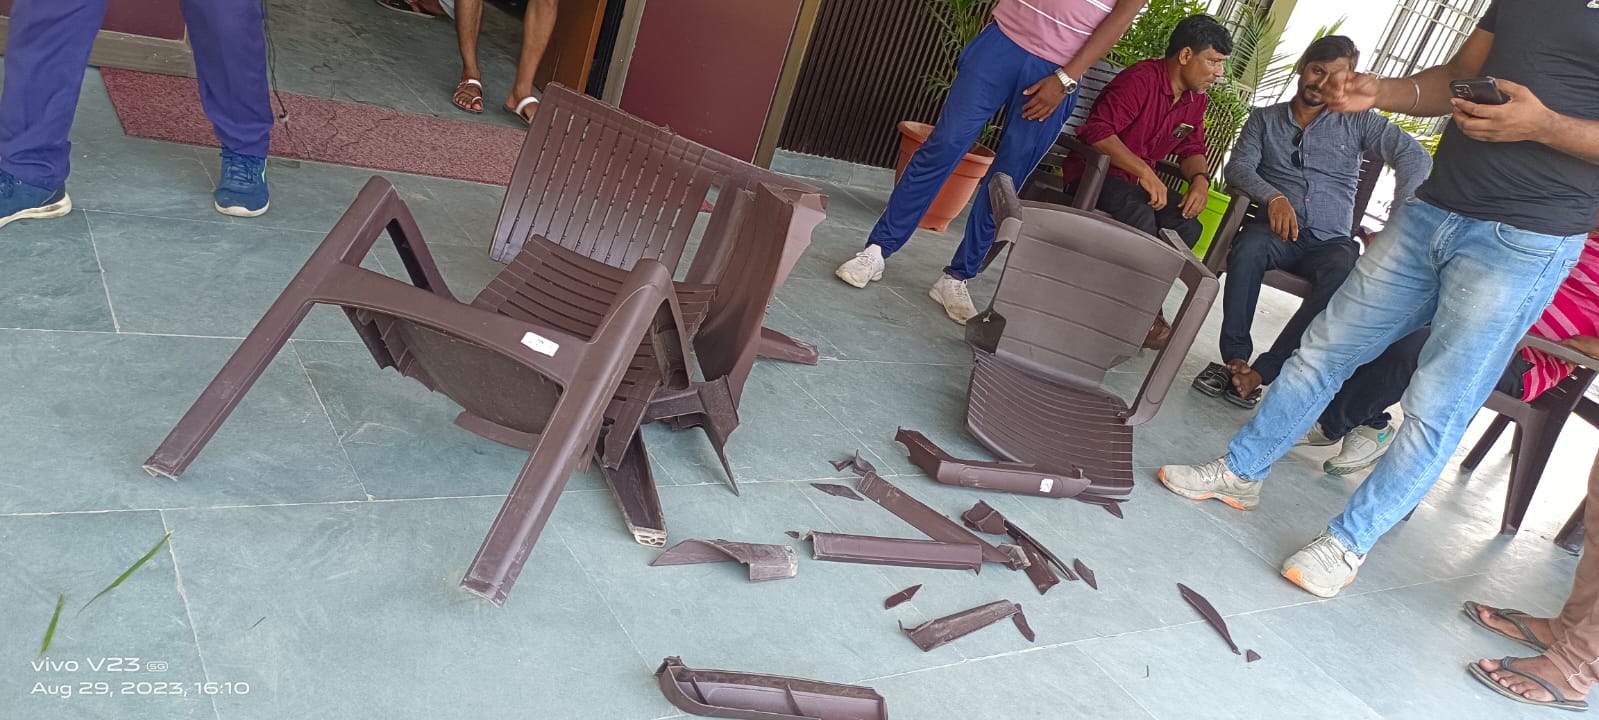 ईओ कार्यालय के बाहर टूटी कुर्सियां